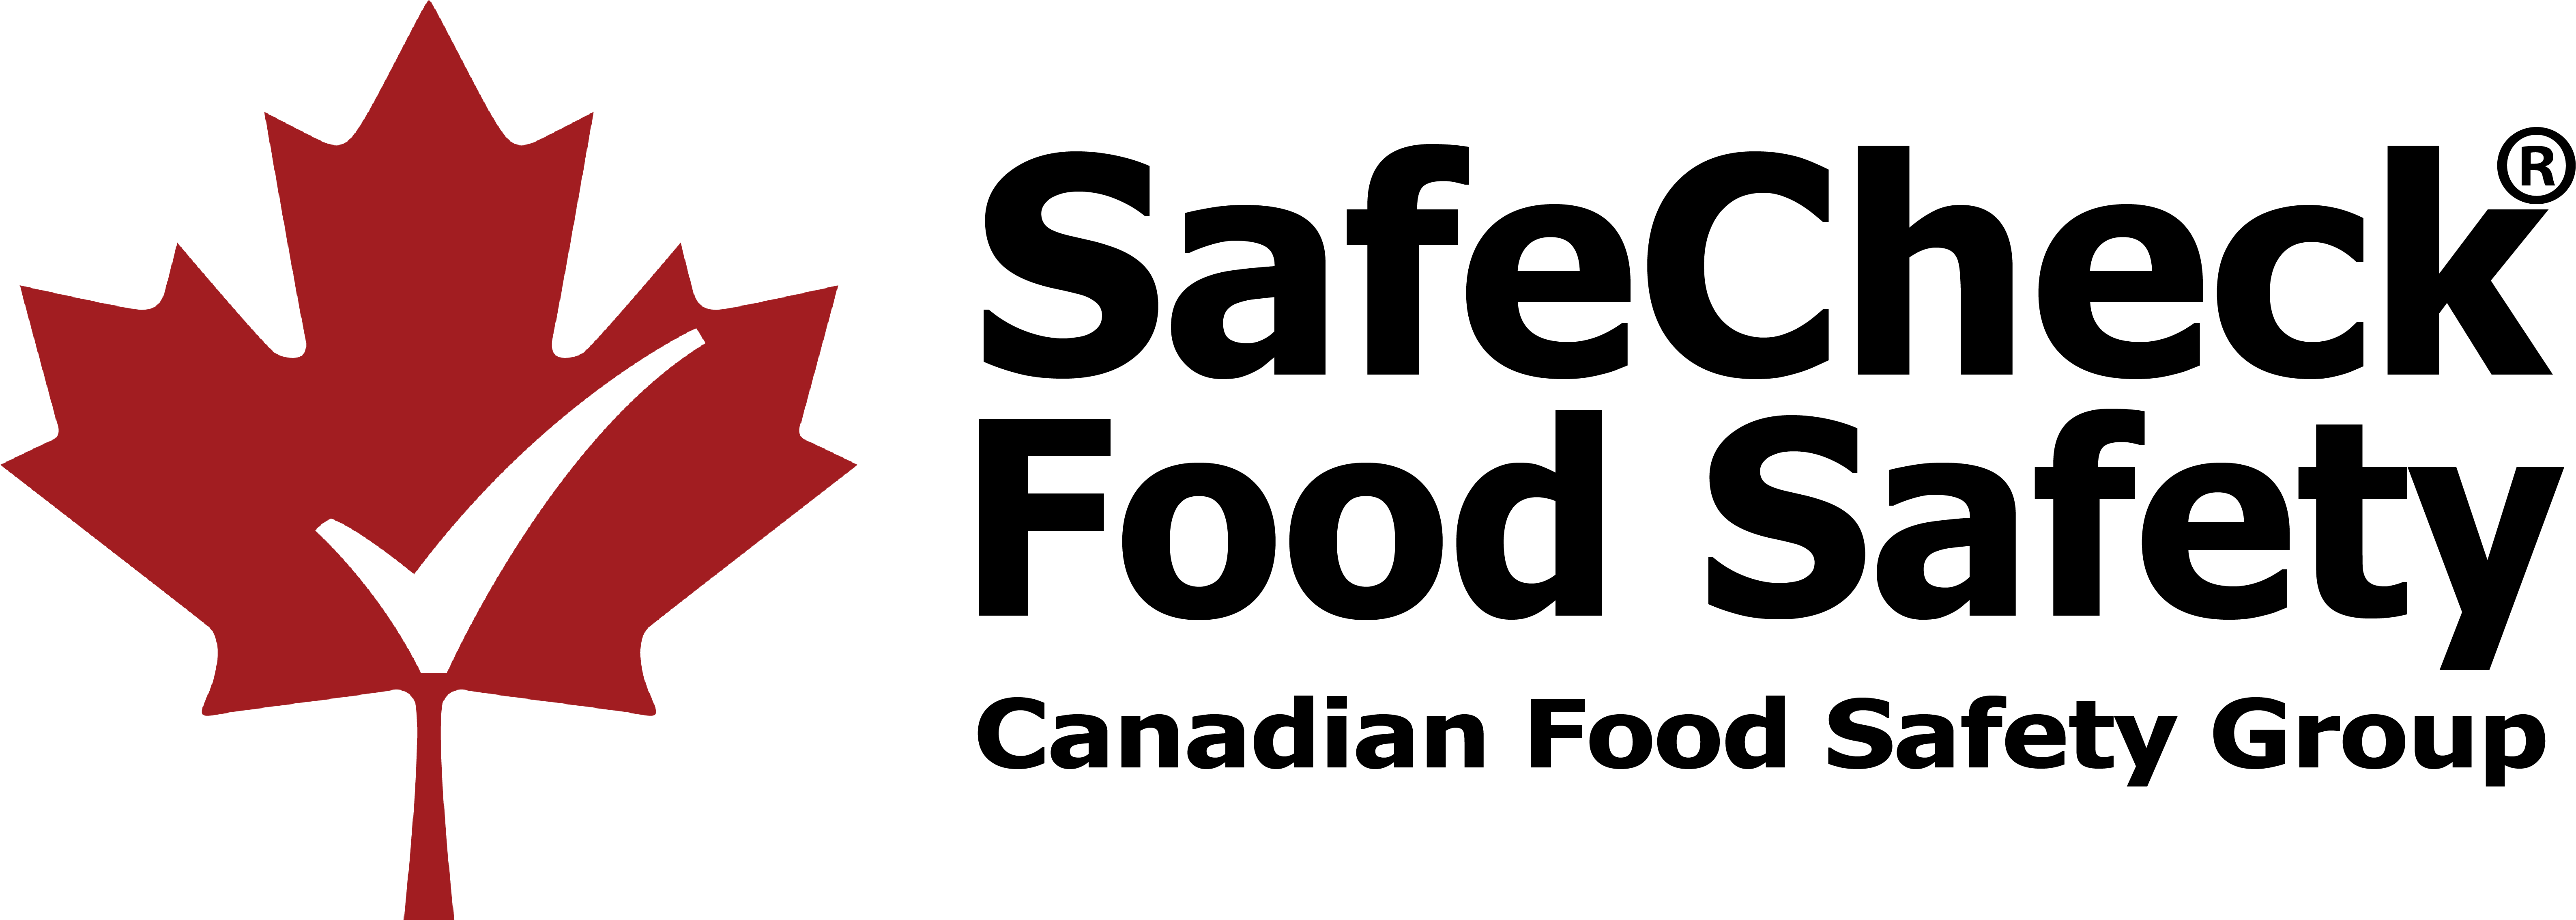 Toggle Nav Safecheck™ Safety - Canadian Flag Maple Leaf (6898x2417)